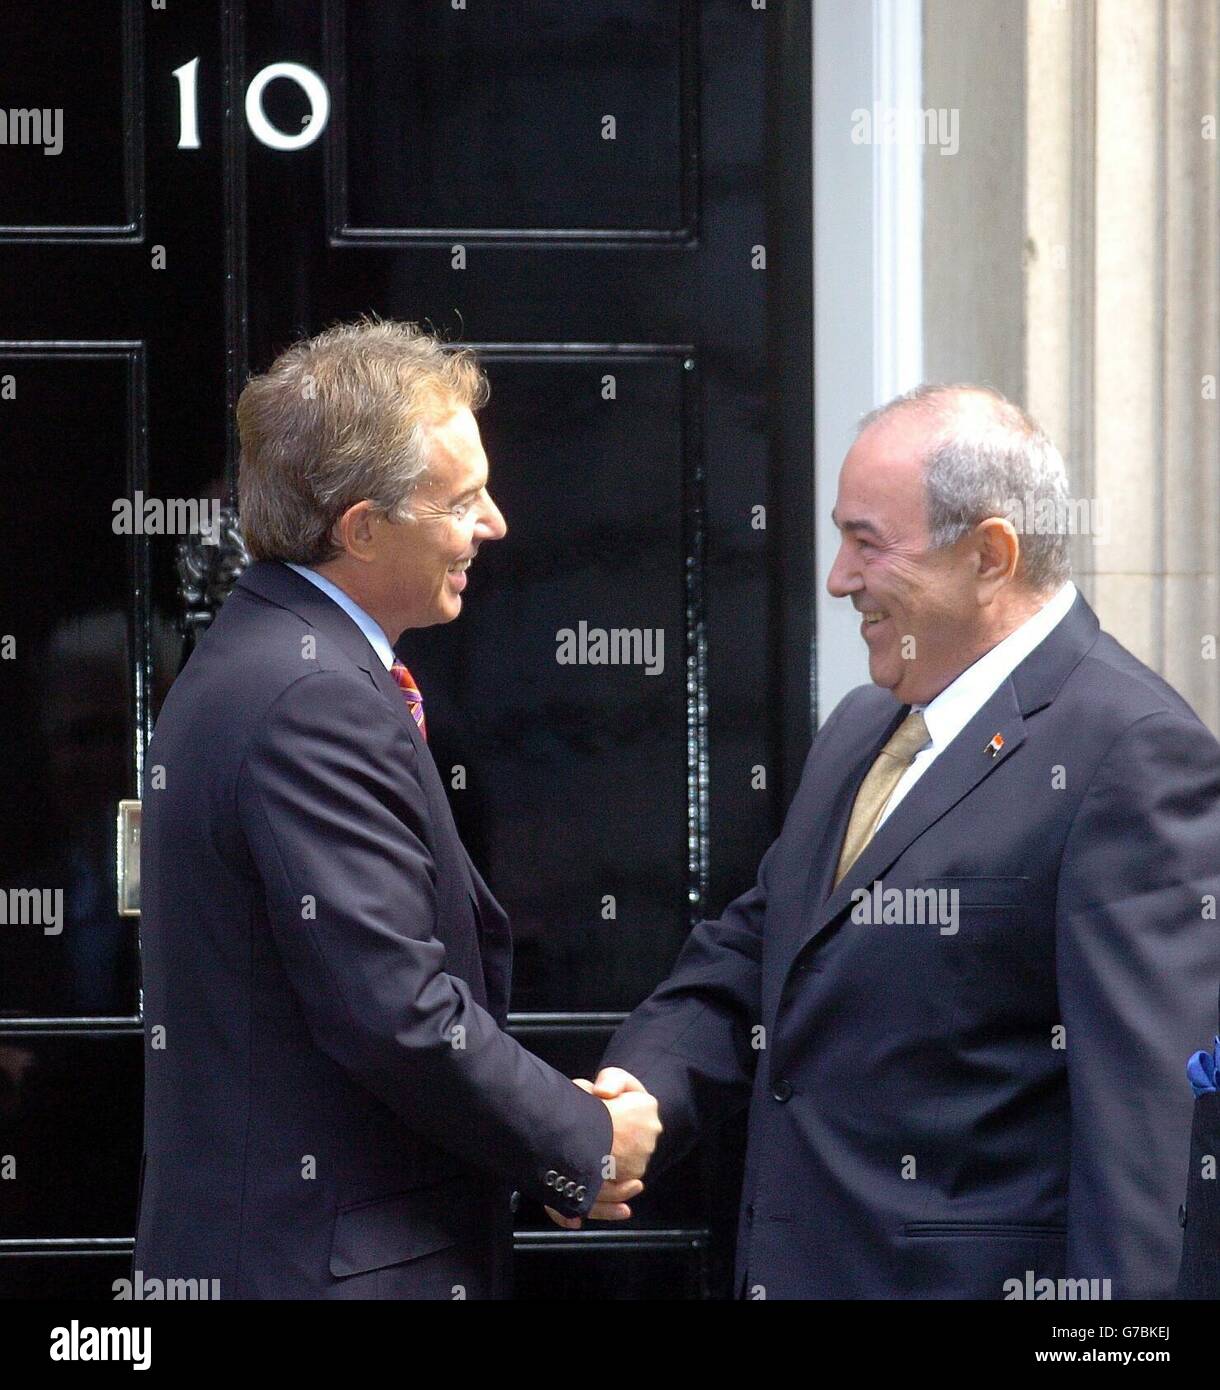 El primer Ministro británico Tony Blair saluda al primer Ministro iraquí Iyad Allawi en los escalones de la calle Downing 10, Londres. Es probable que las conversaciones de Downing Street se centren en si las elecciones en Irak pueden seguir siendo Adelante en enero, como estaba previsto, a pesar de la feroz violencia desatada en las últimas semanas. Su reunión se produce después de que el señor Blair haya rebajado las afirmaciones de que un año antes de la guerra le habían advertido que expulsaría a Sadam Husein del caos que podría seguir. Foto de stock